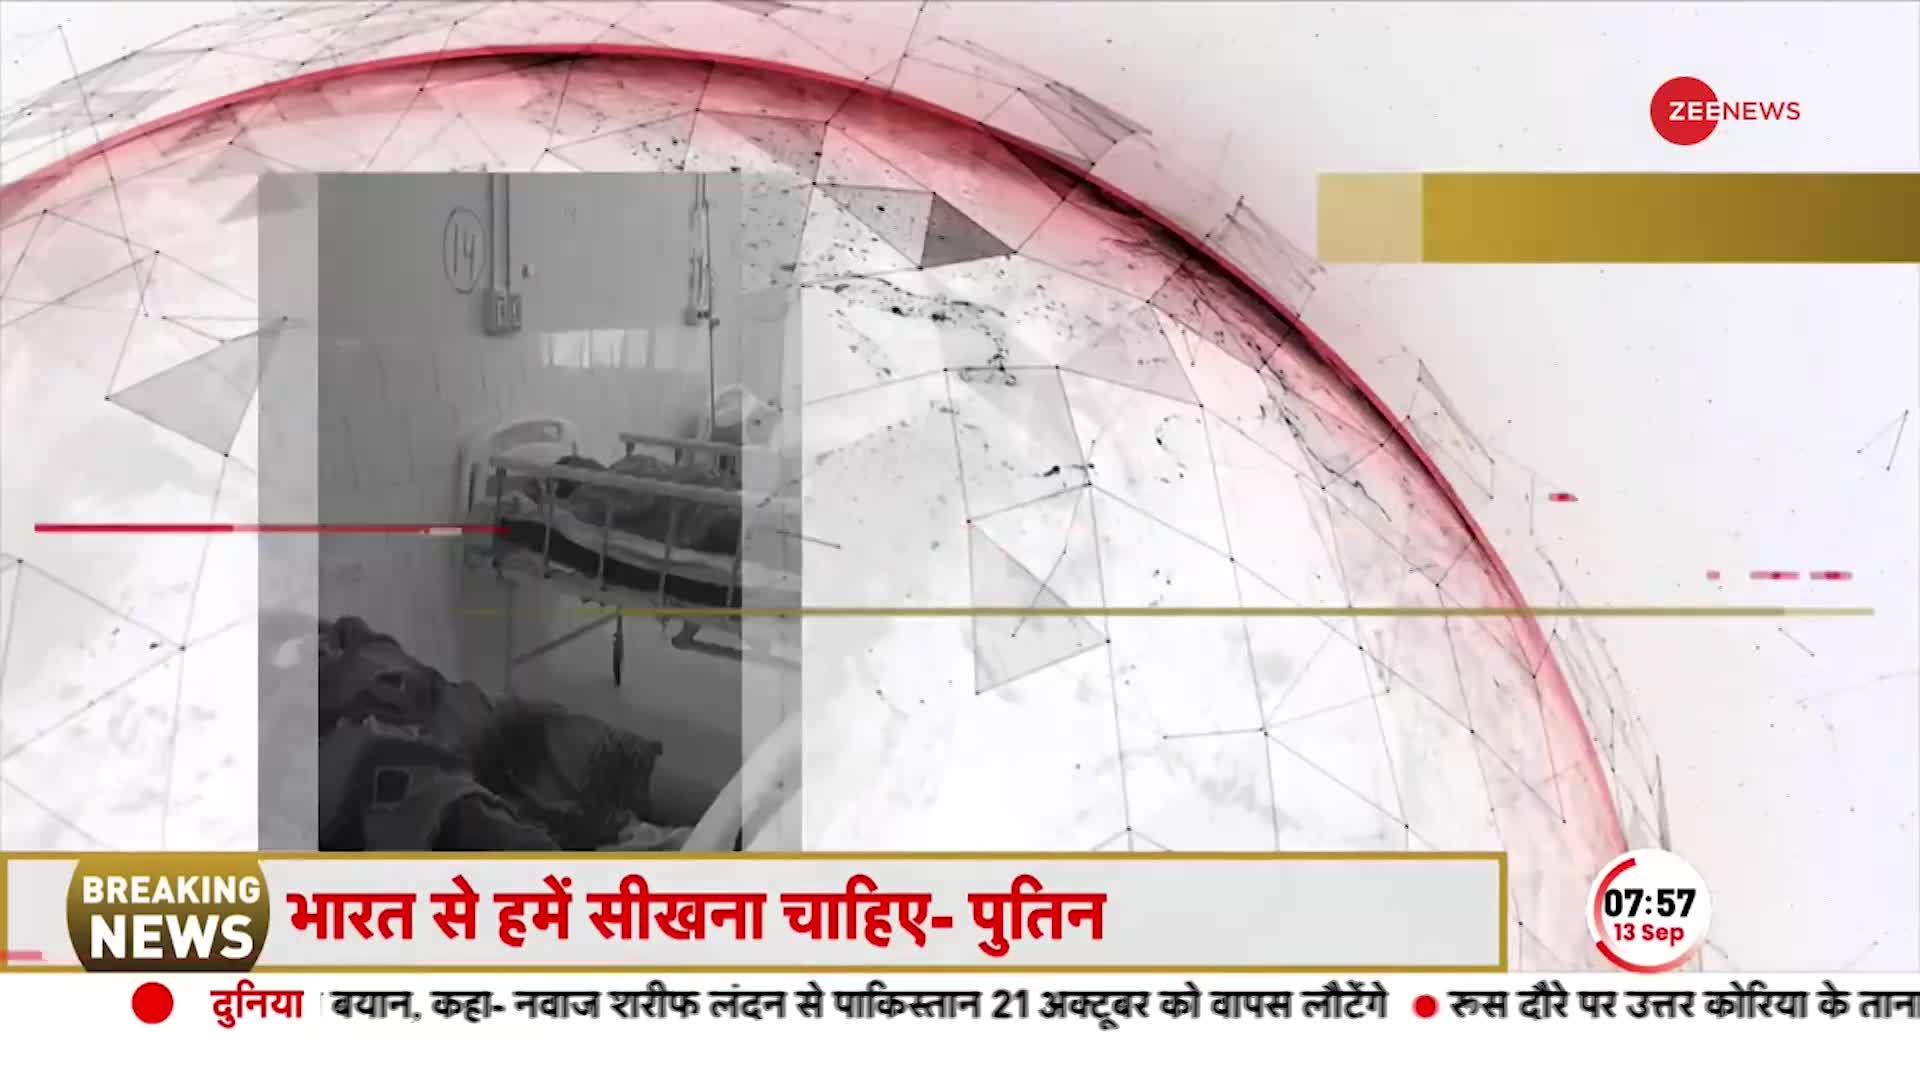 Rajasthan Accident Breaking: भरतपुर के पास बड़ा सड़क हादसा, बस पलटने से 11 लोगों की मौत